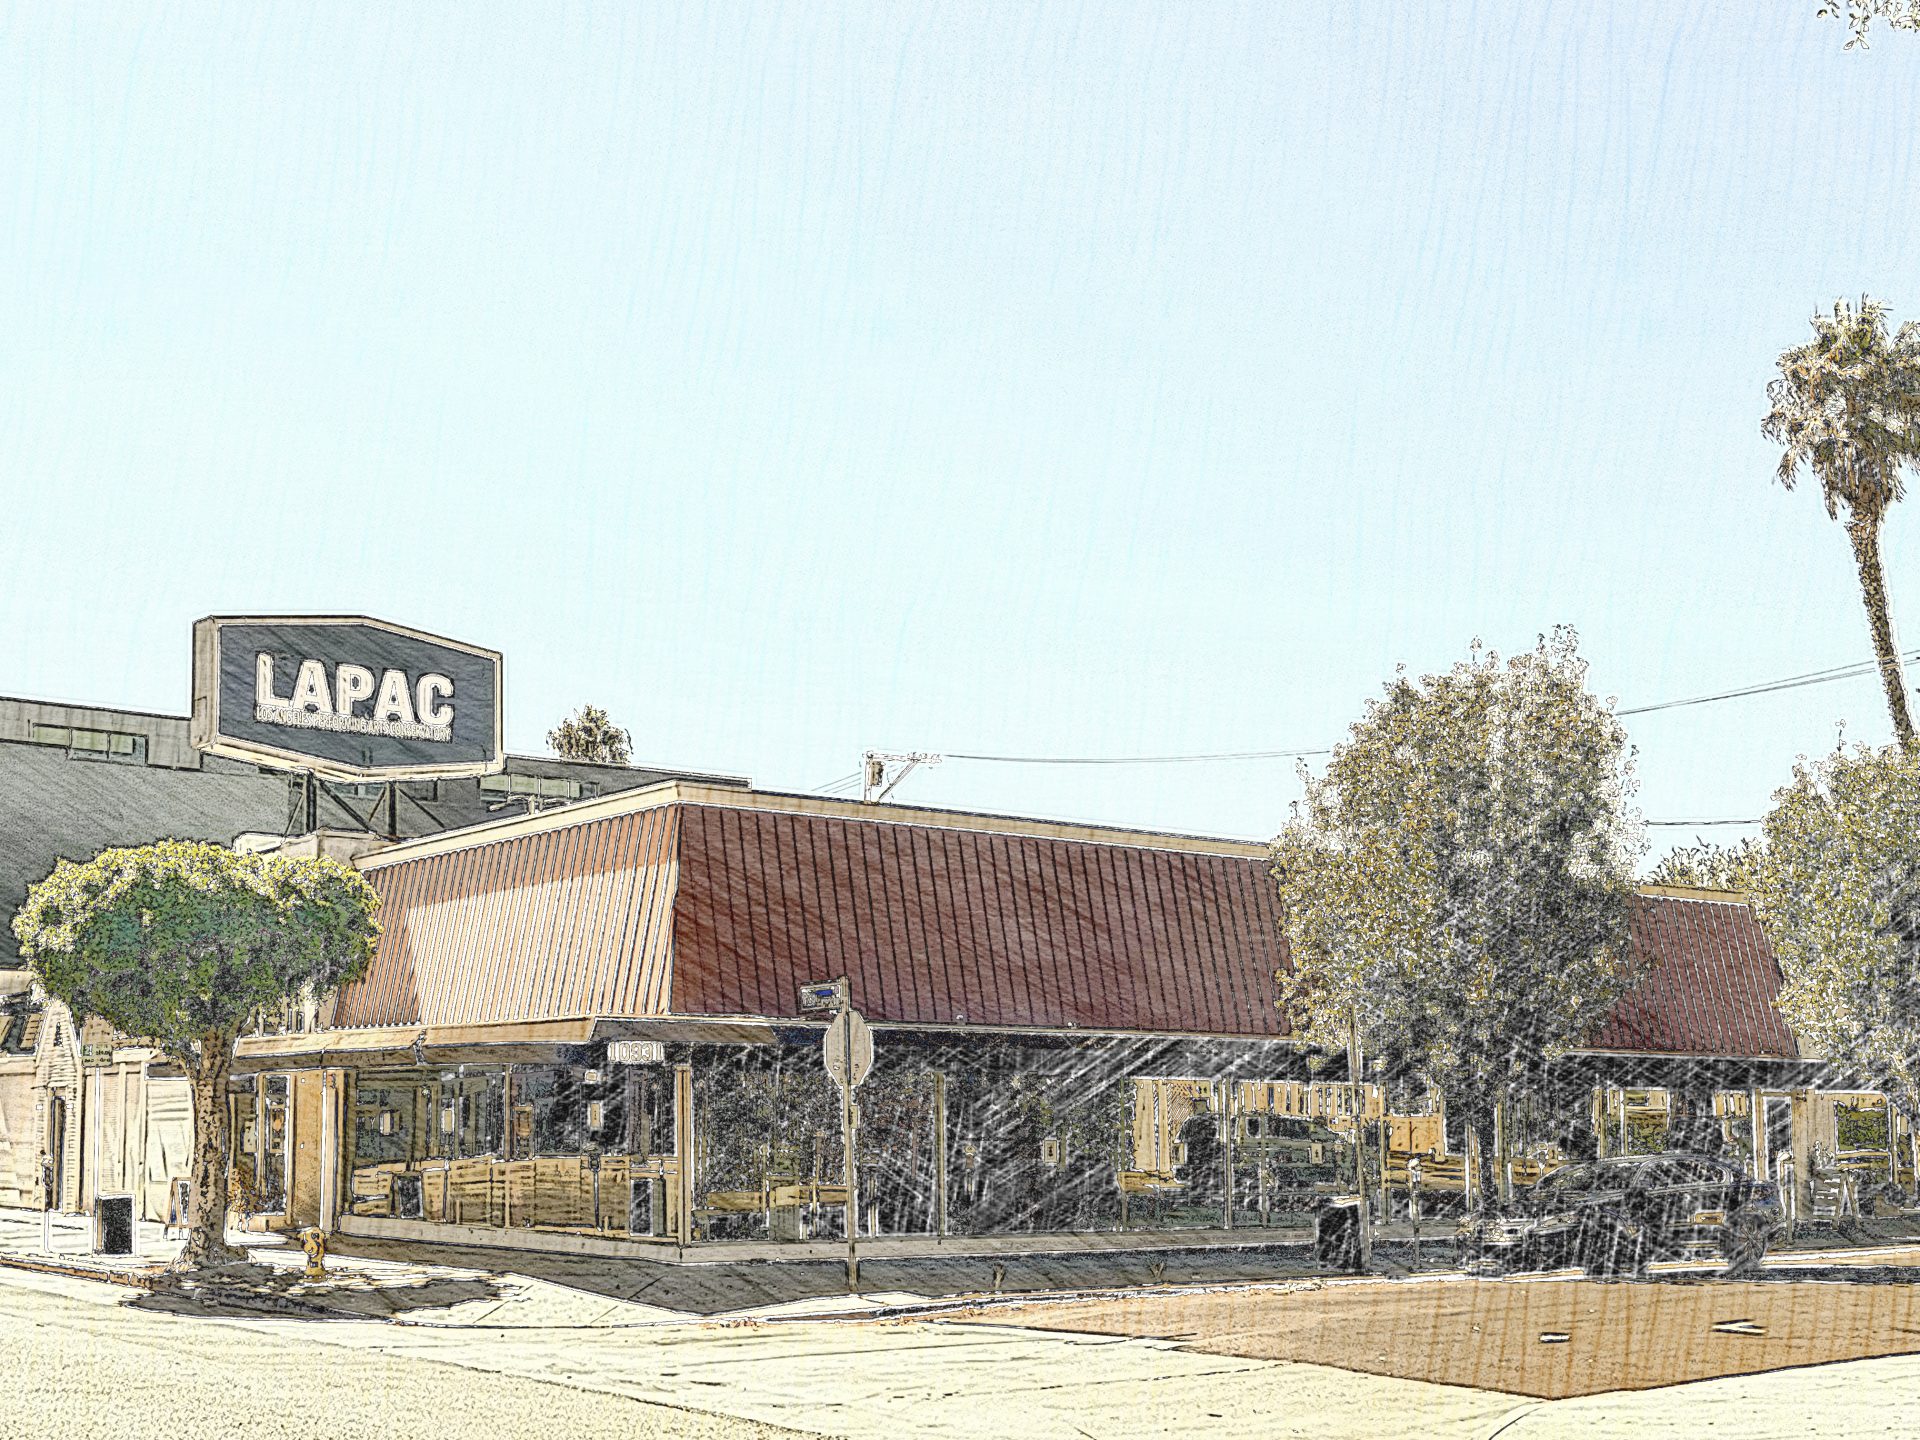 LAPAC BUILDING DRAWN